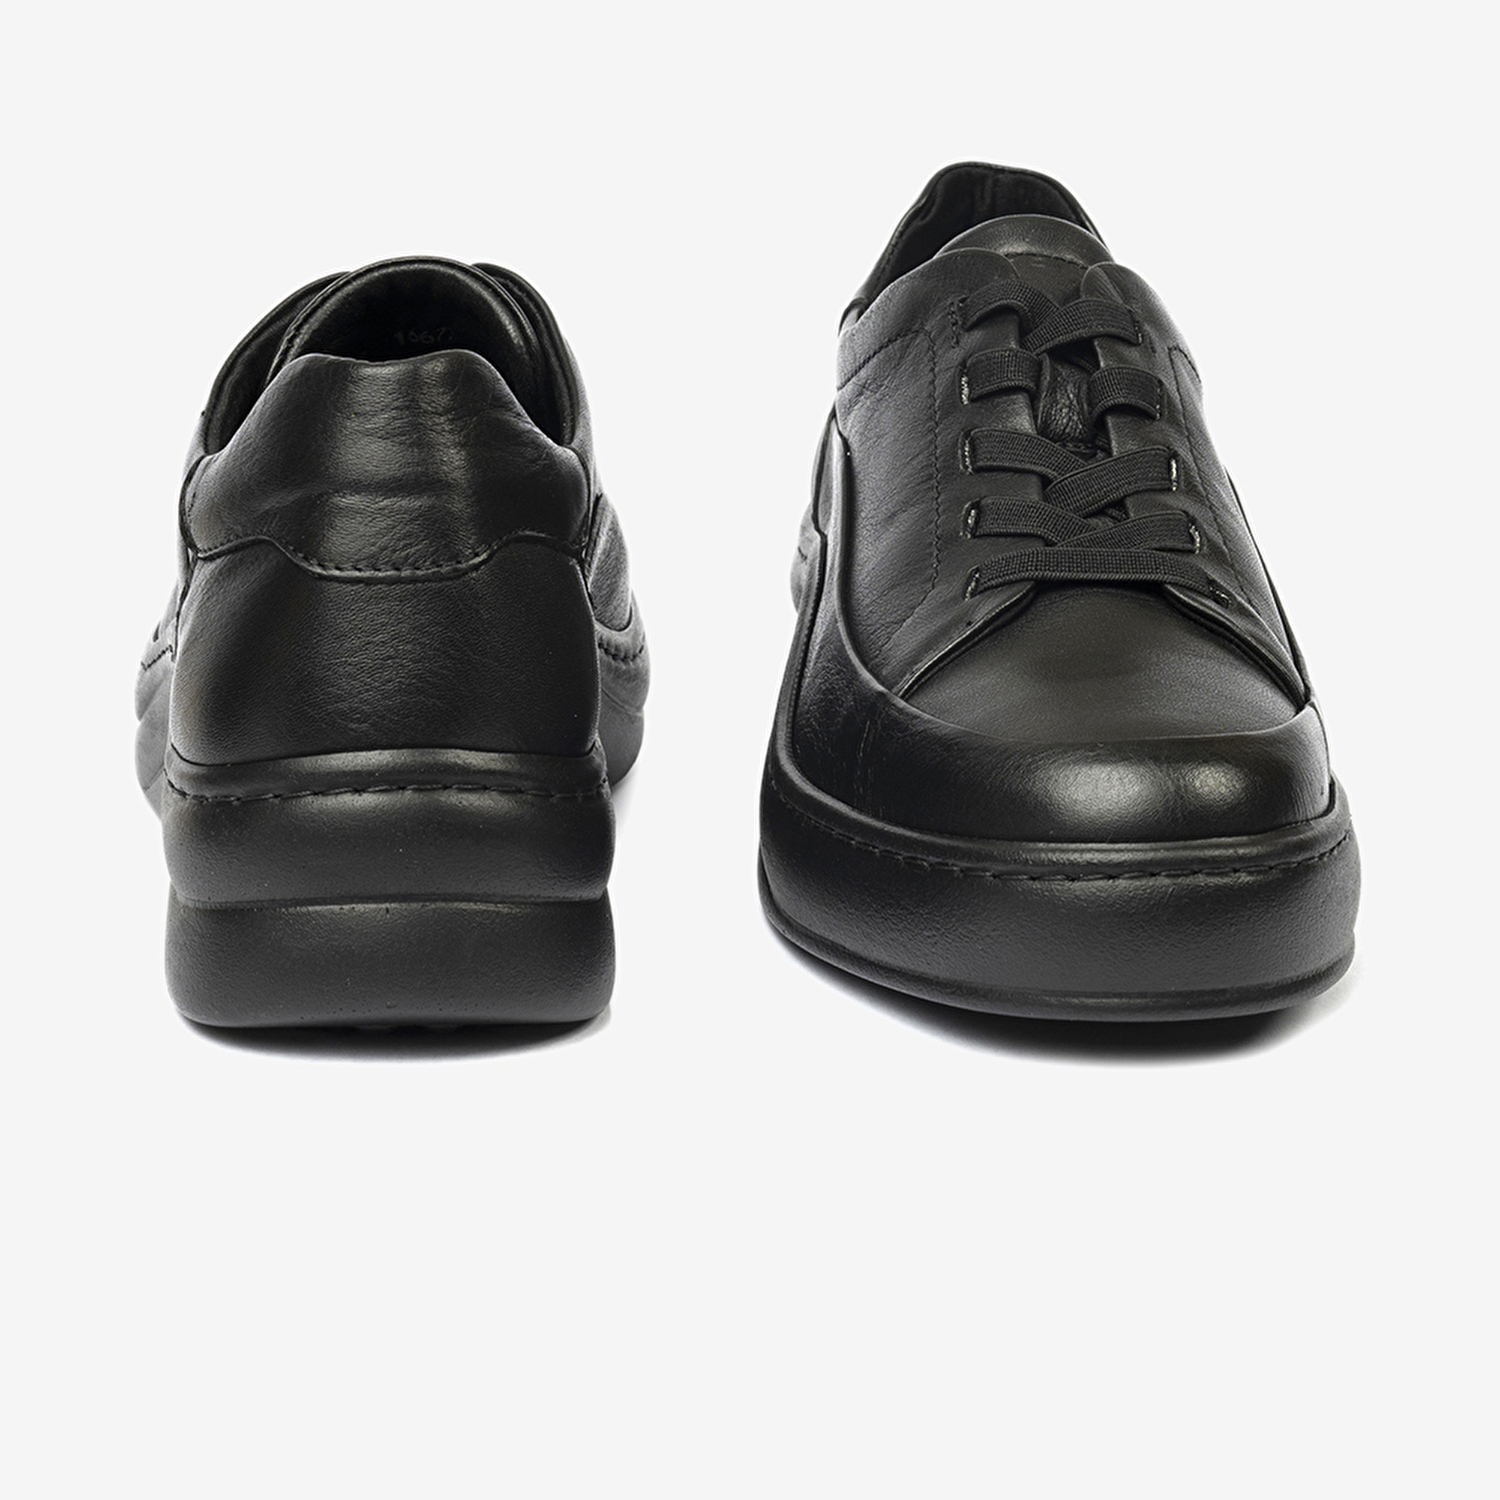 Kadın Siyah Hakiki Deri Sneaker Ayakkabı 4Y2FA59052-7